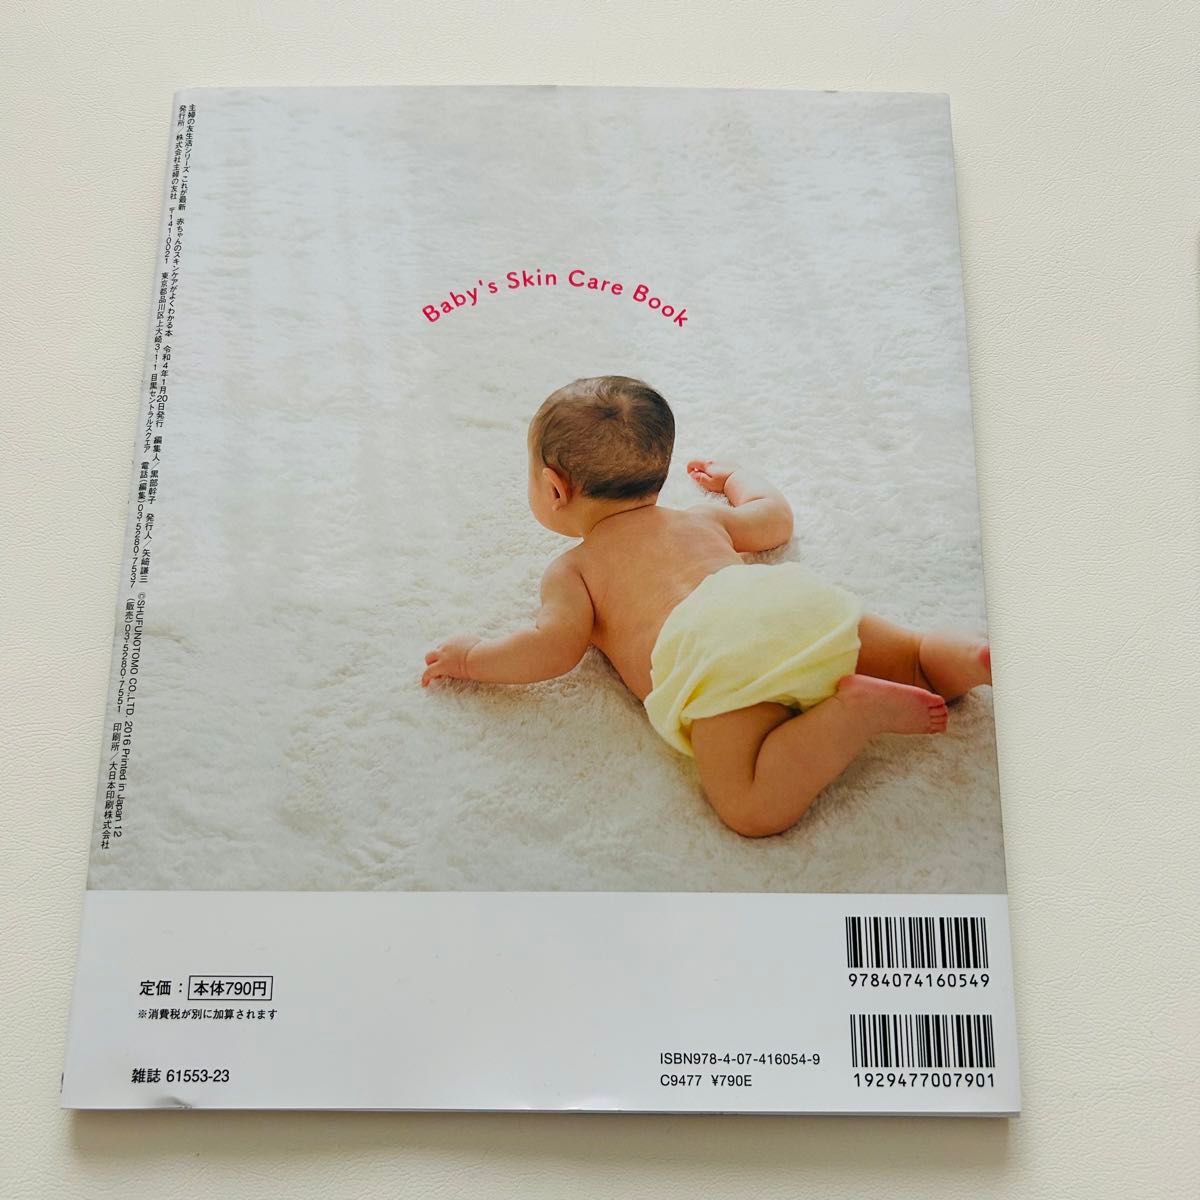 赤ちゃんのスキンケアがよくわかる本 スキンケア入浴法 DVD